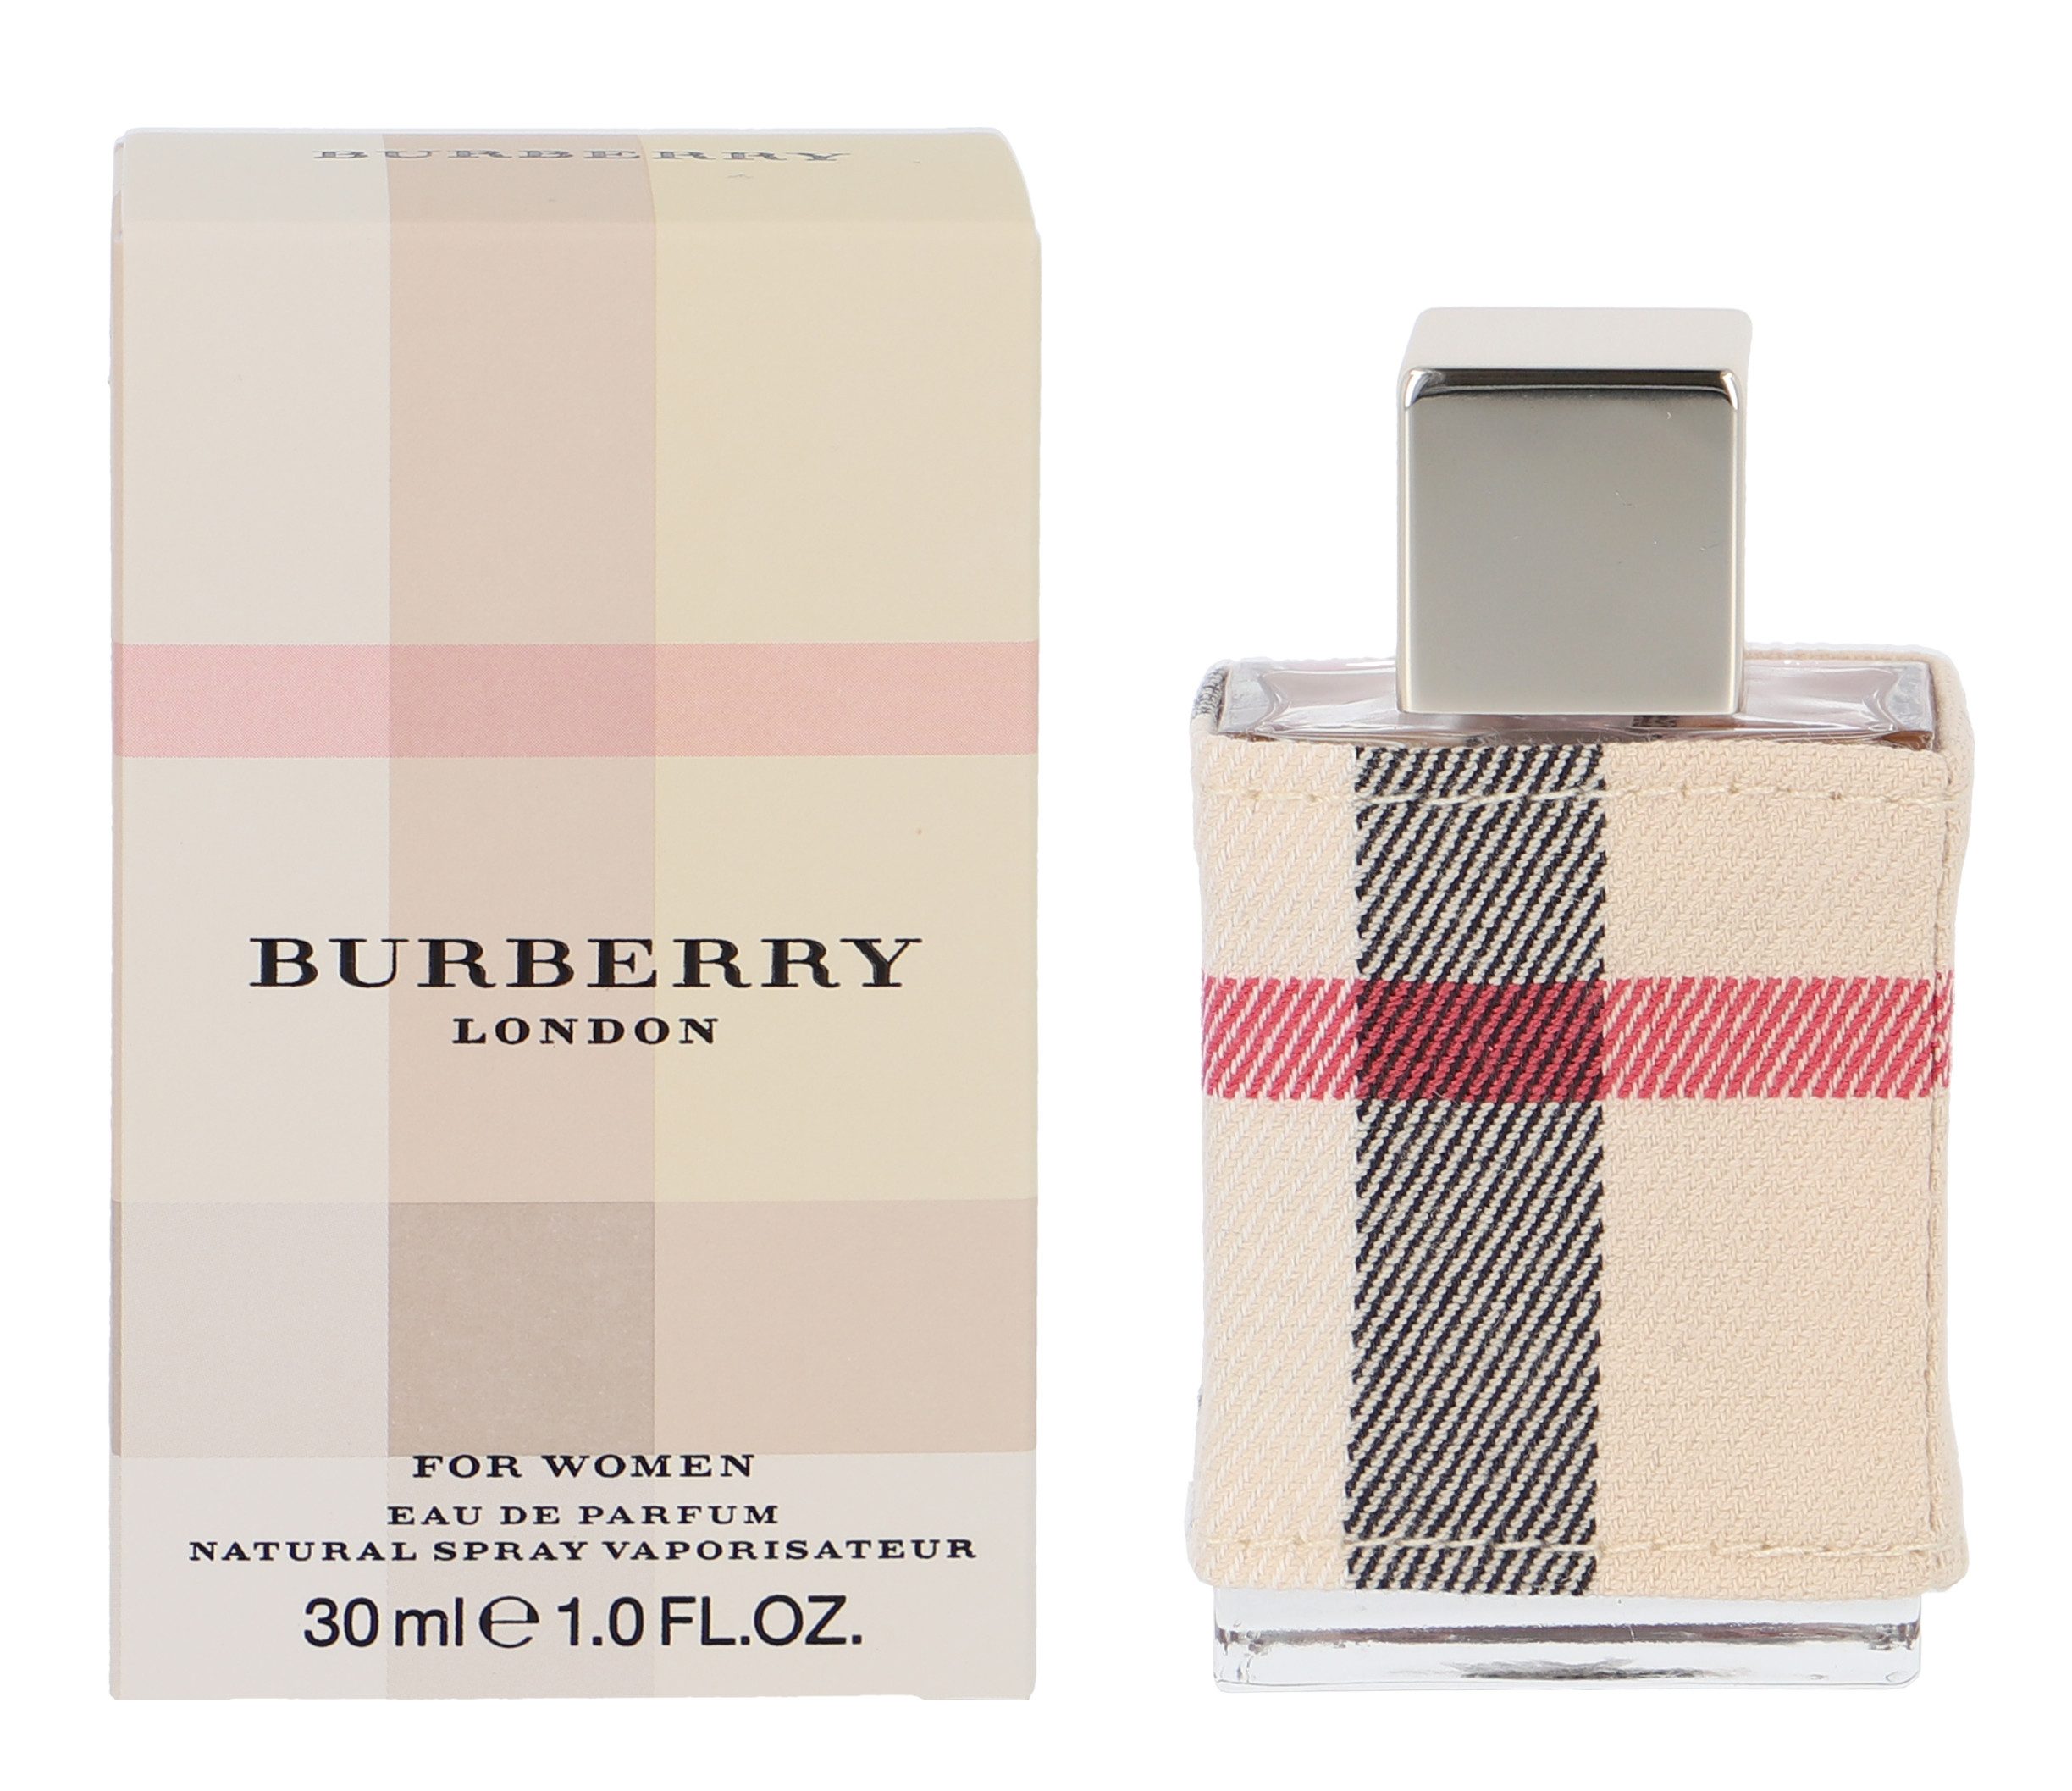 BURBERRY Eau de Parfum London Women